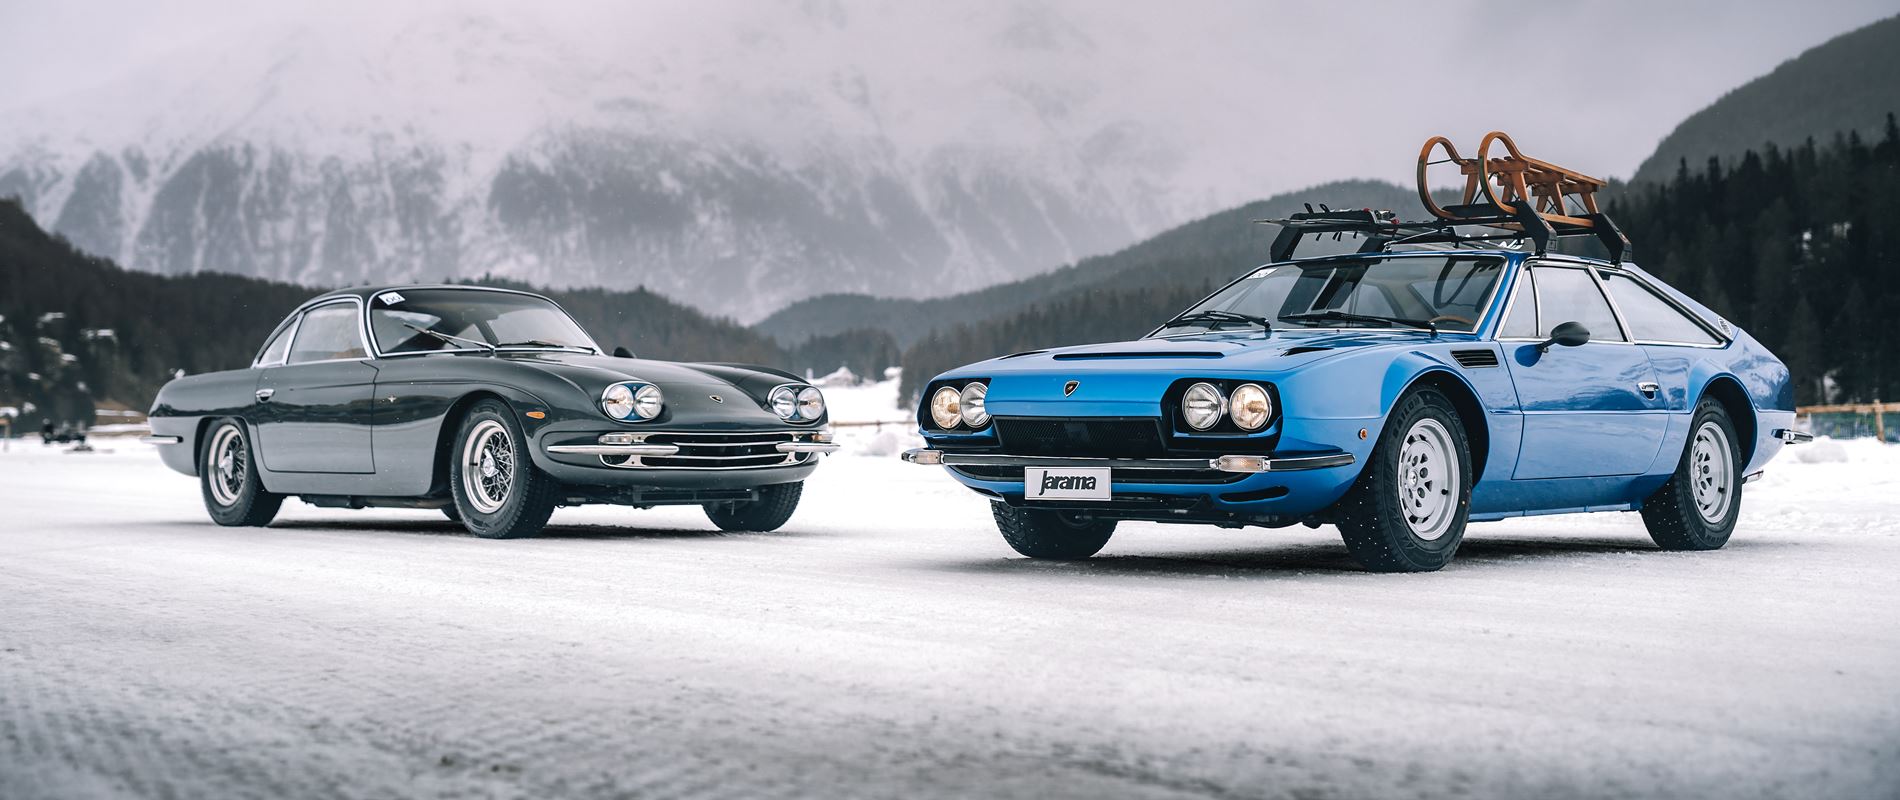 Automobili Lamborghini s history on the ice in St Moritz